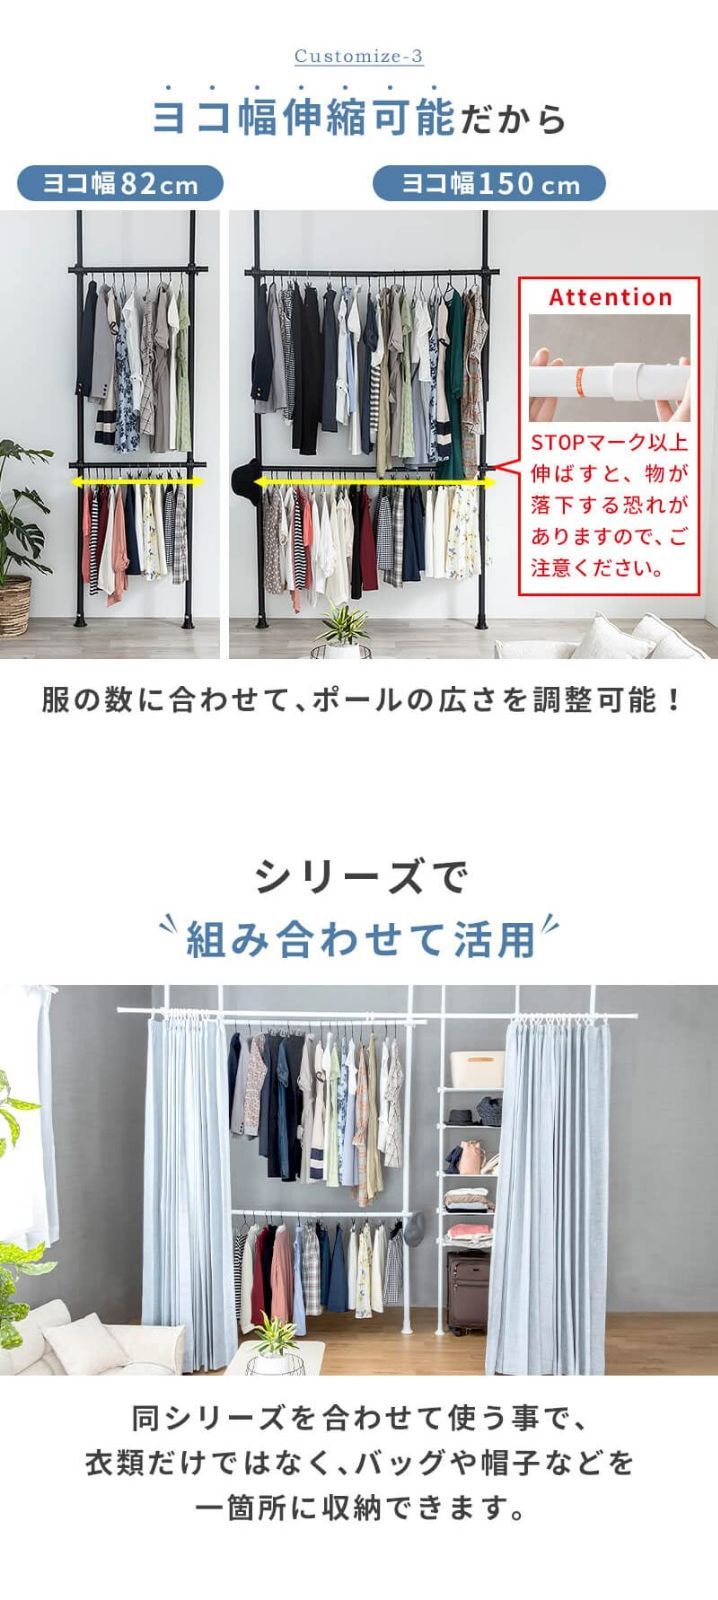 【色:ホワイト】NEO CRASY ハンガーラック 突っ張り 壁面収納 洋服 衣